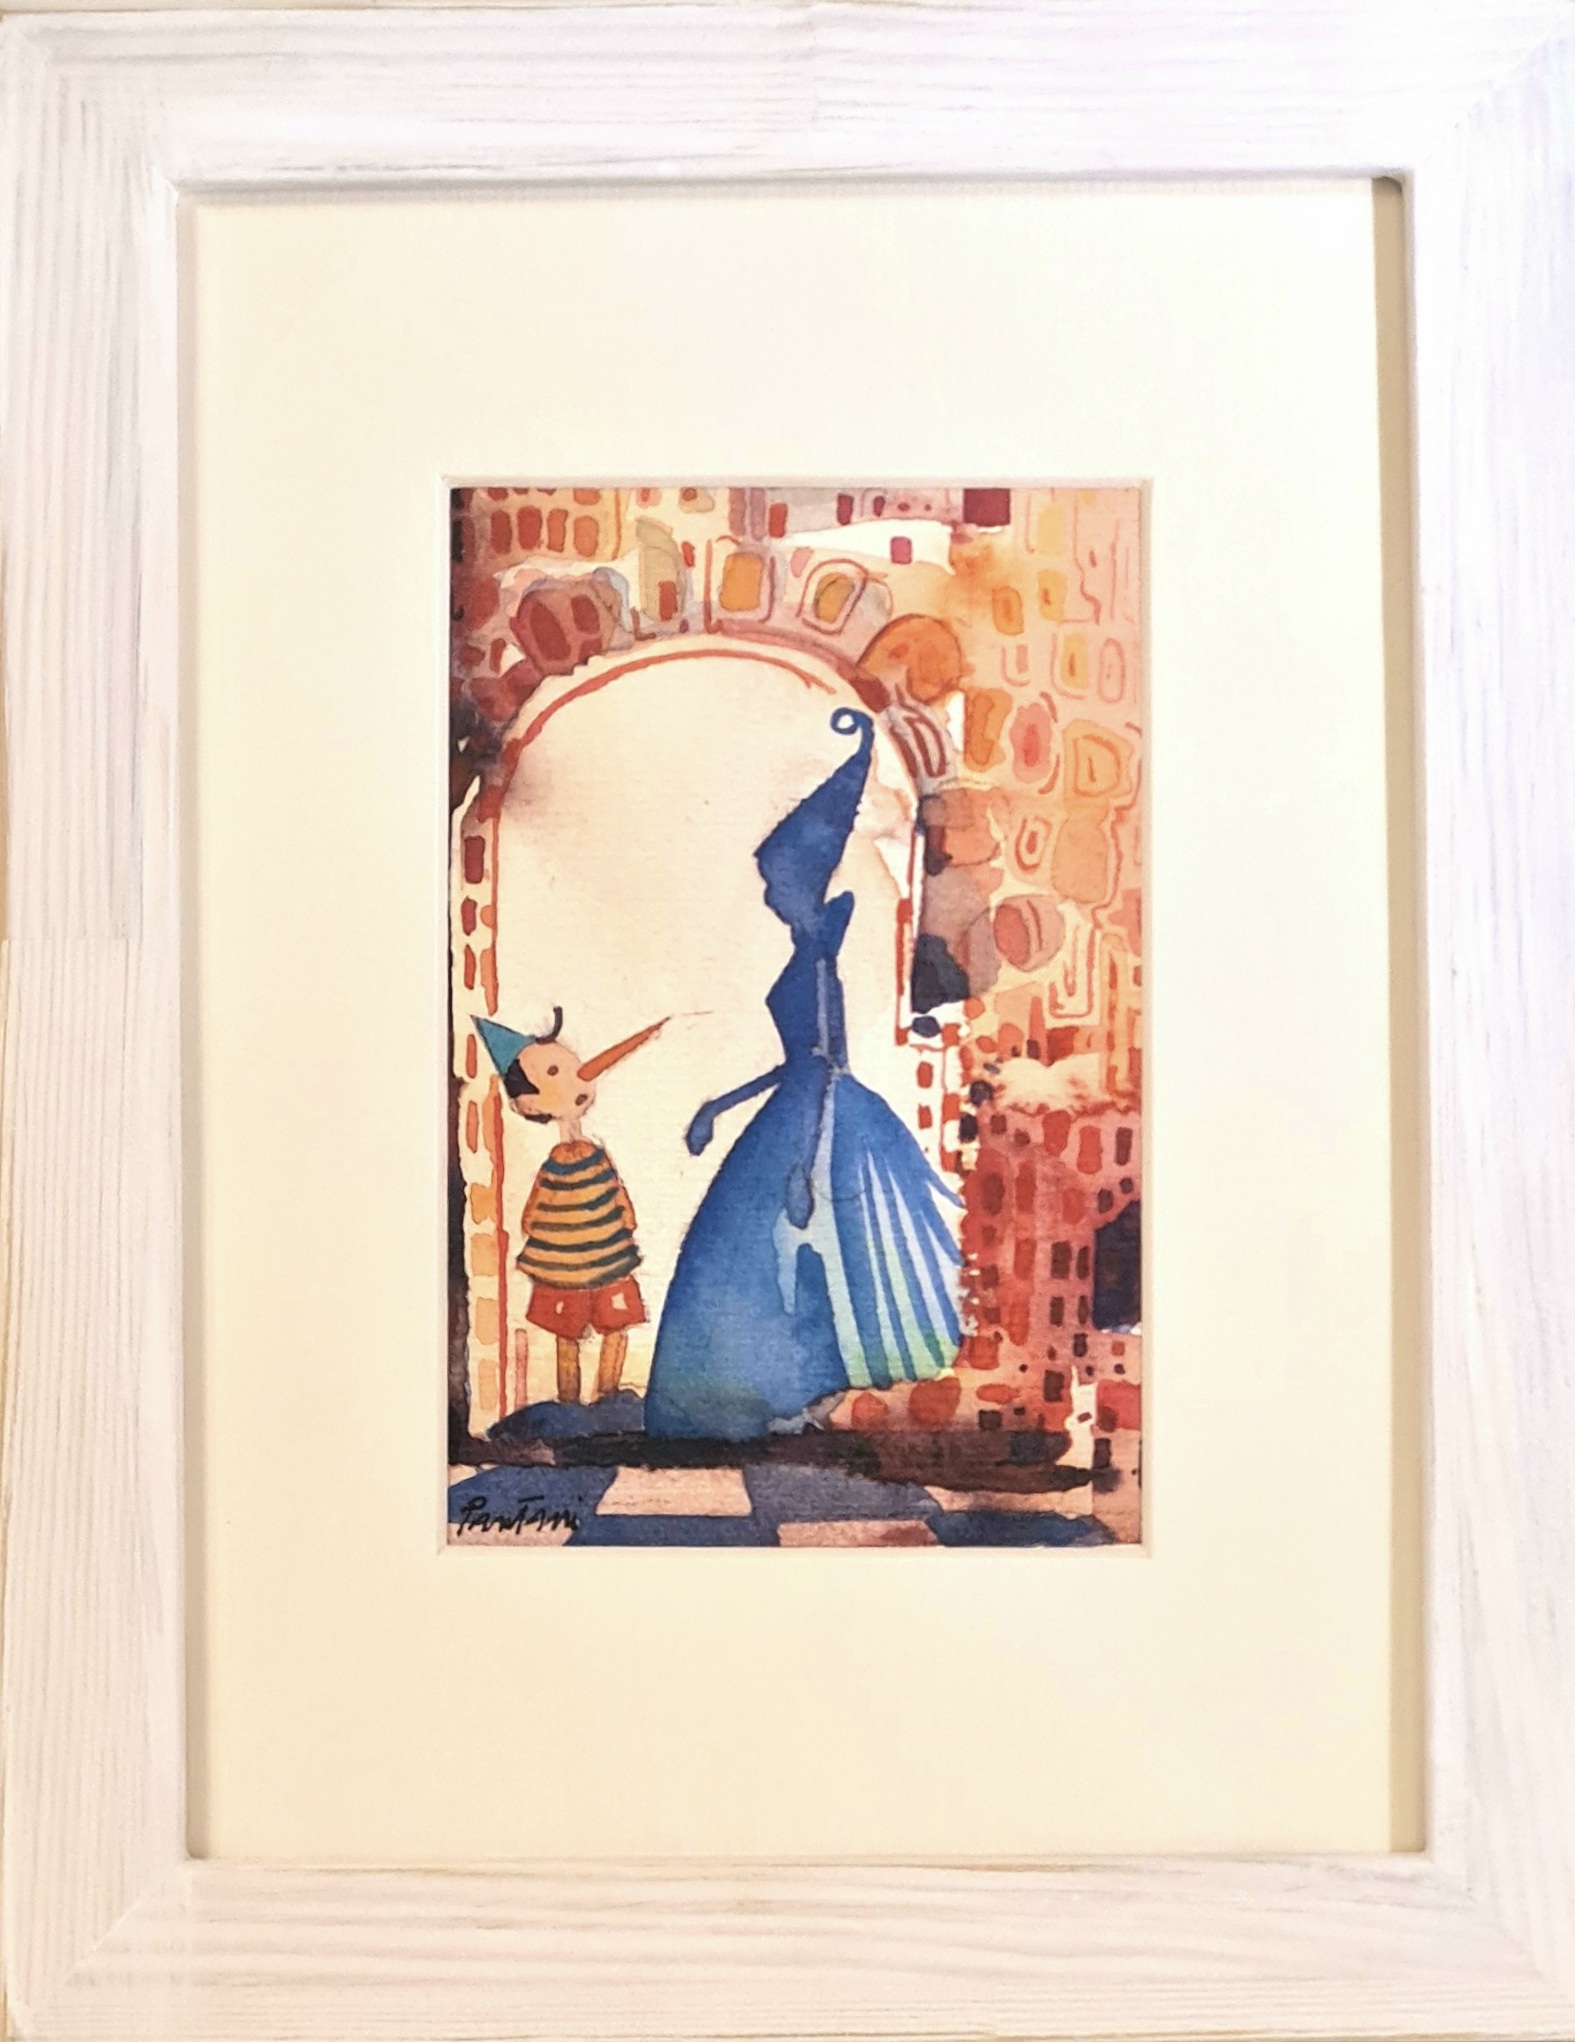 Pinocchio e la Fata con cornice - Pinocchio and the Fairy with frame